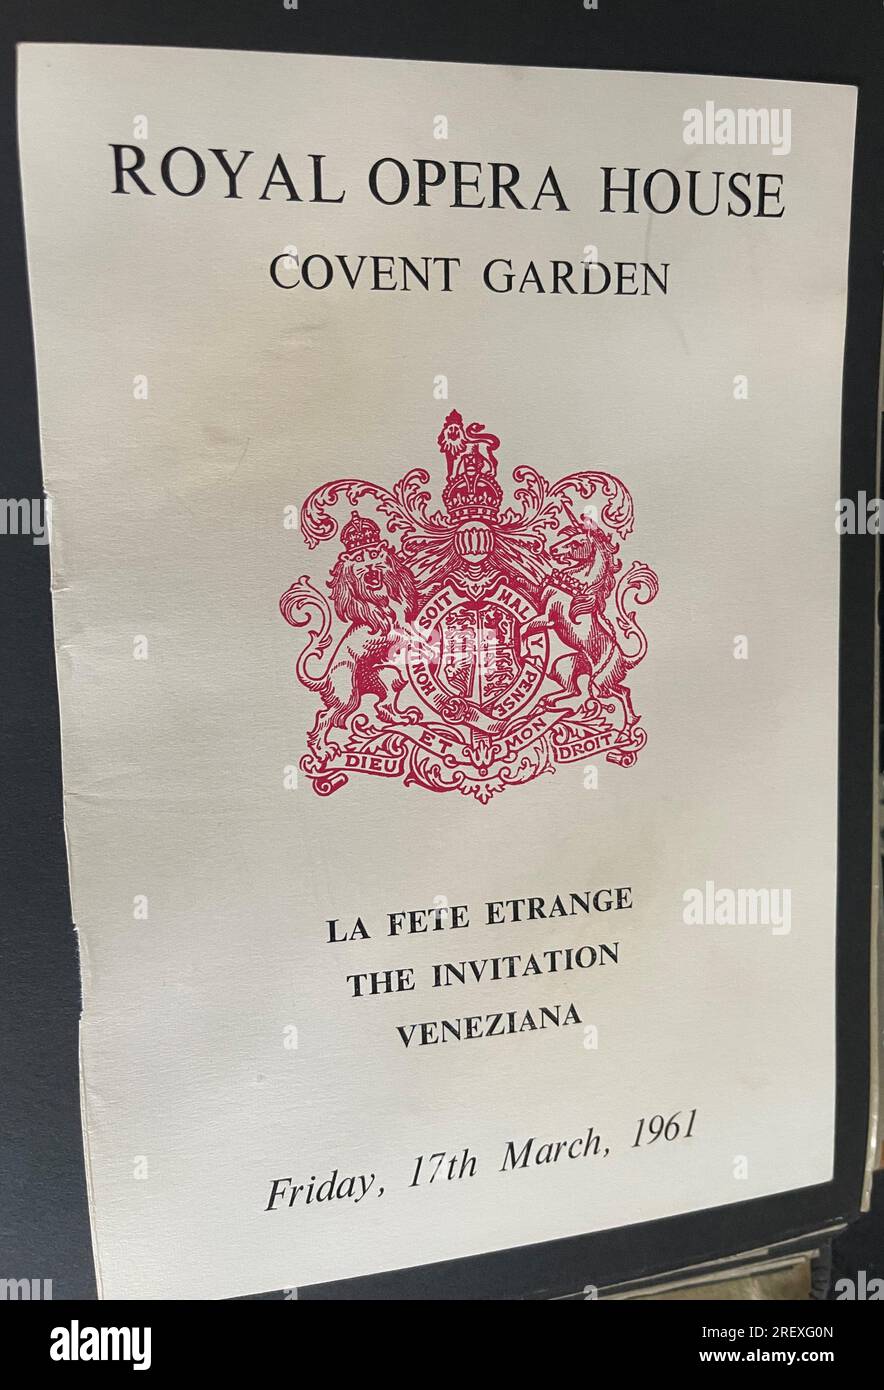 Volantino d'epoca per la Fete Etrange The Invitation Veneziana - Royal Opera House, Covent Garden 1961. Foto Stock